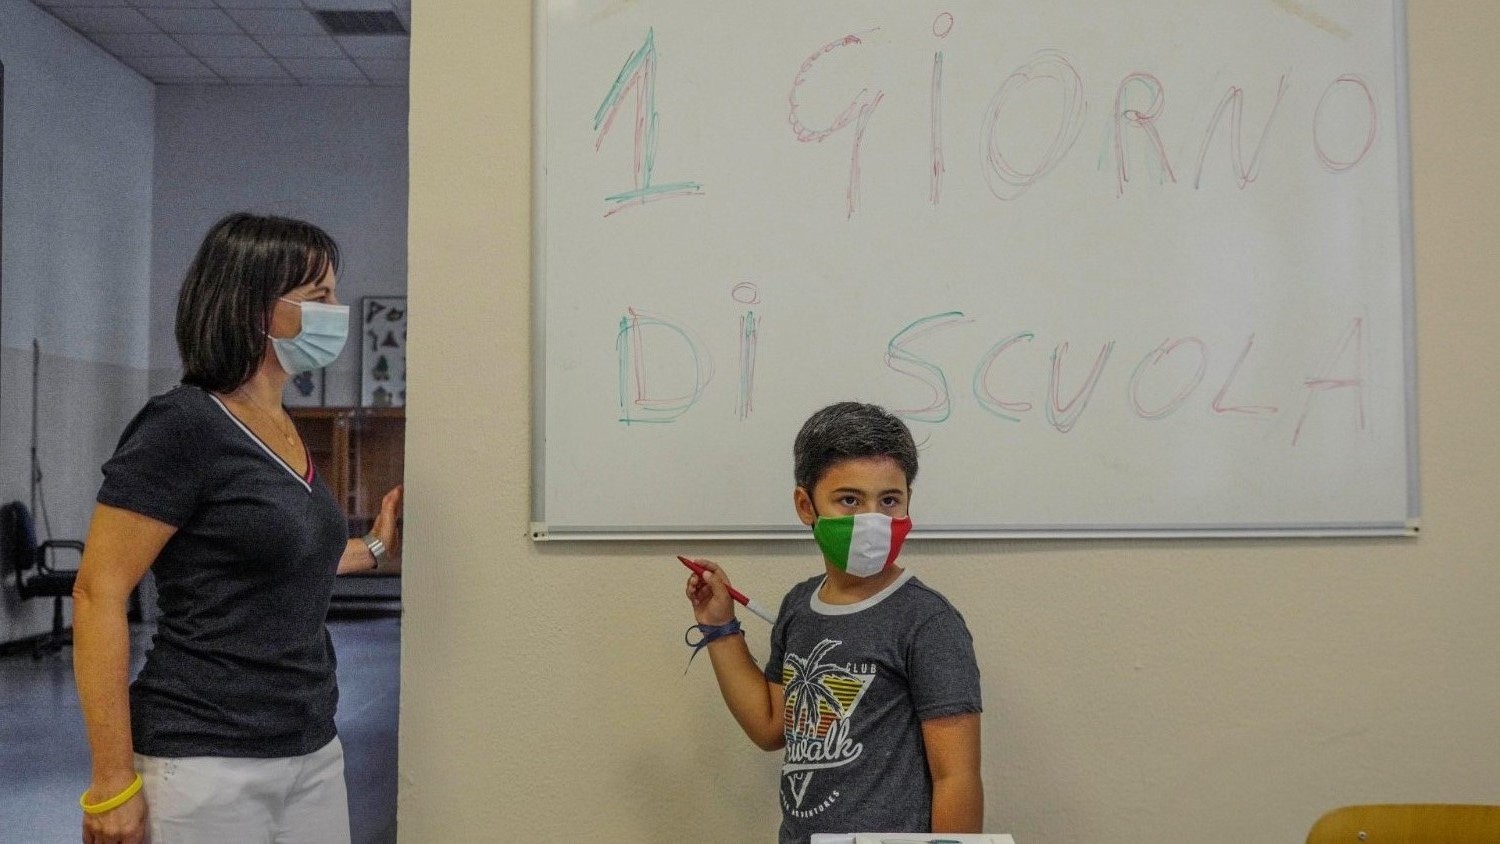 Италия ввела новые правила для школы эпохи COVID-19